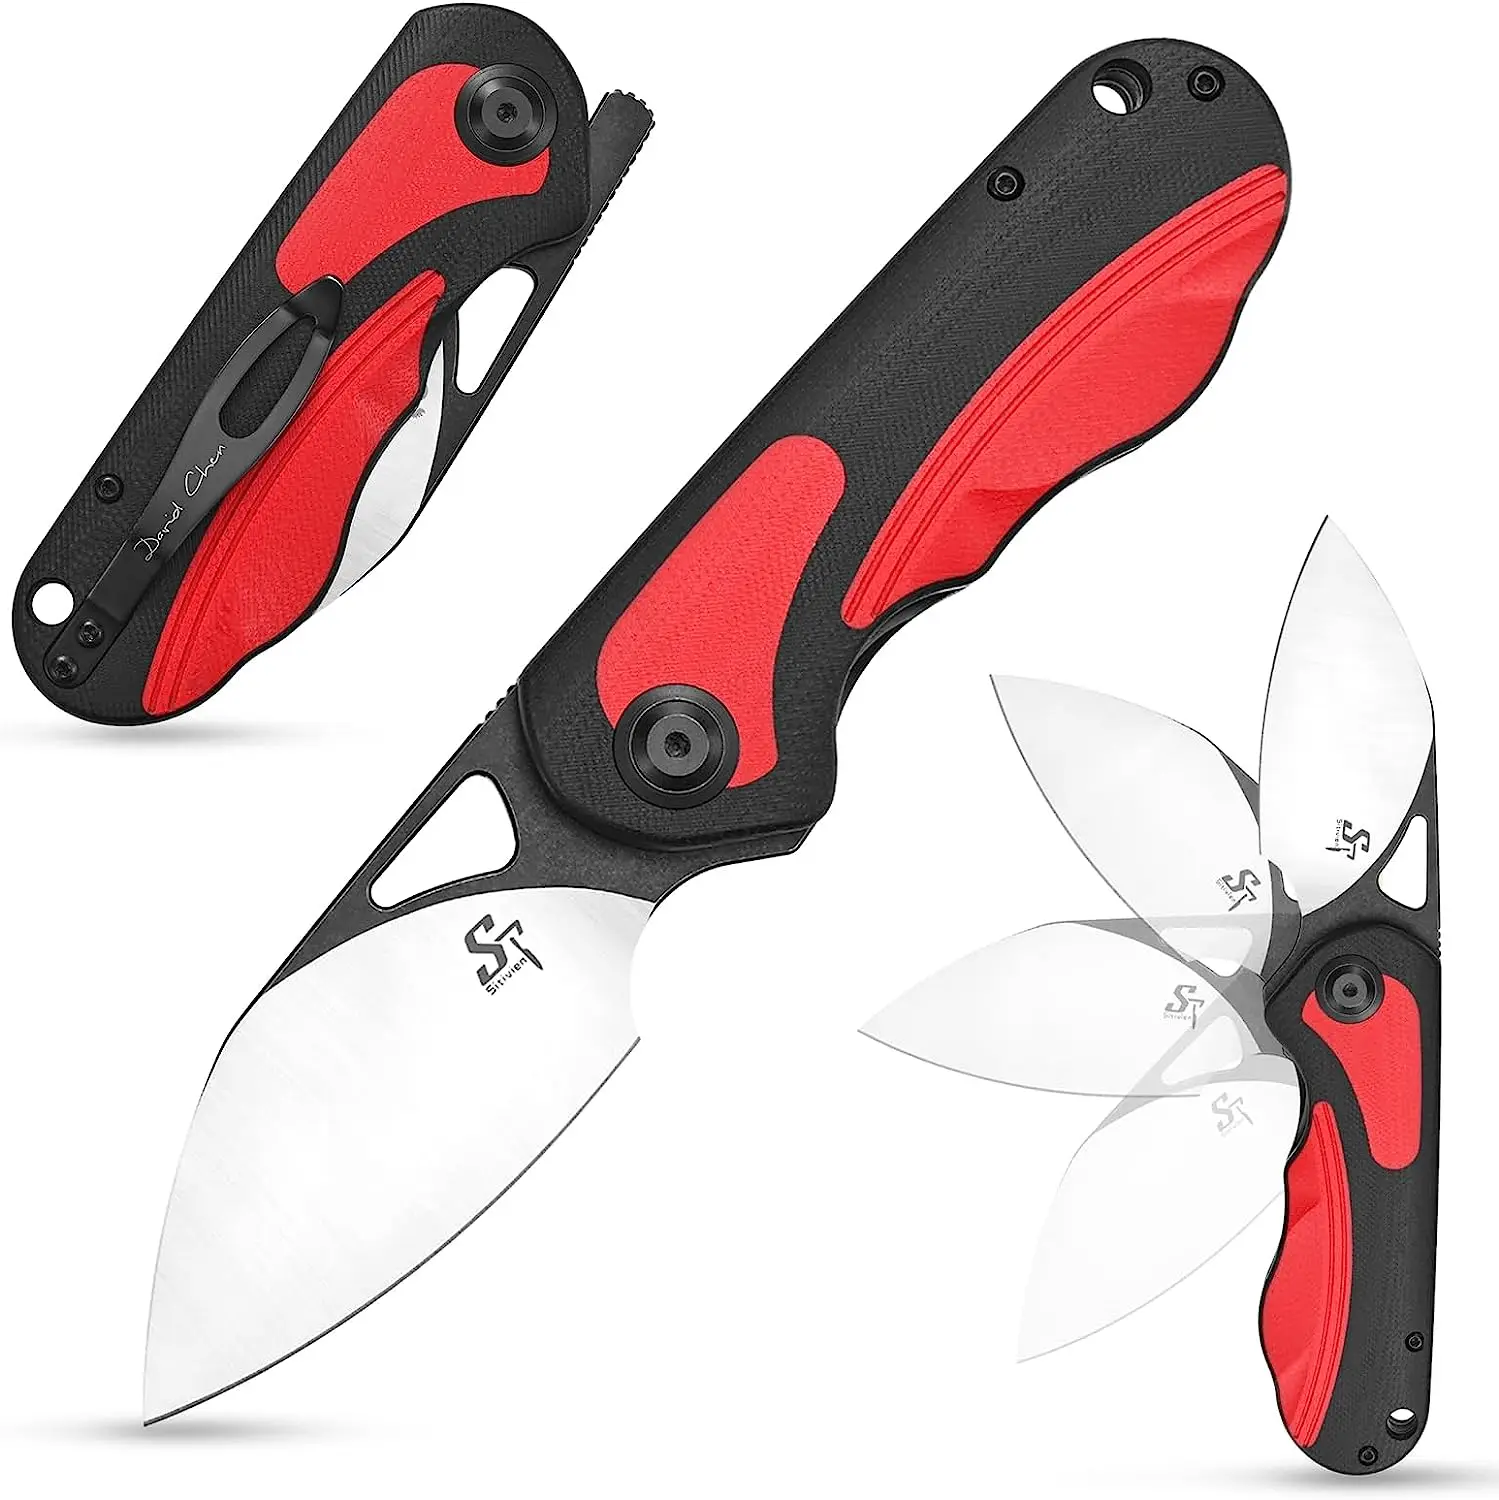 Sitivien ST156 Pocket Folding Knife Sandvik 14C28N Steel Blade G10 Micarta Handle EDC Tool Knifes for